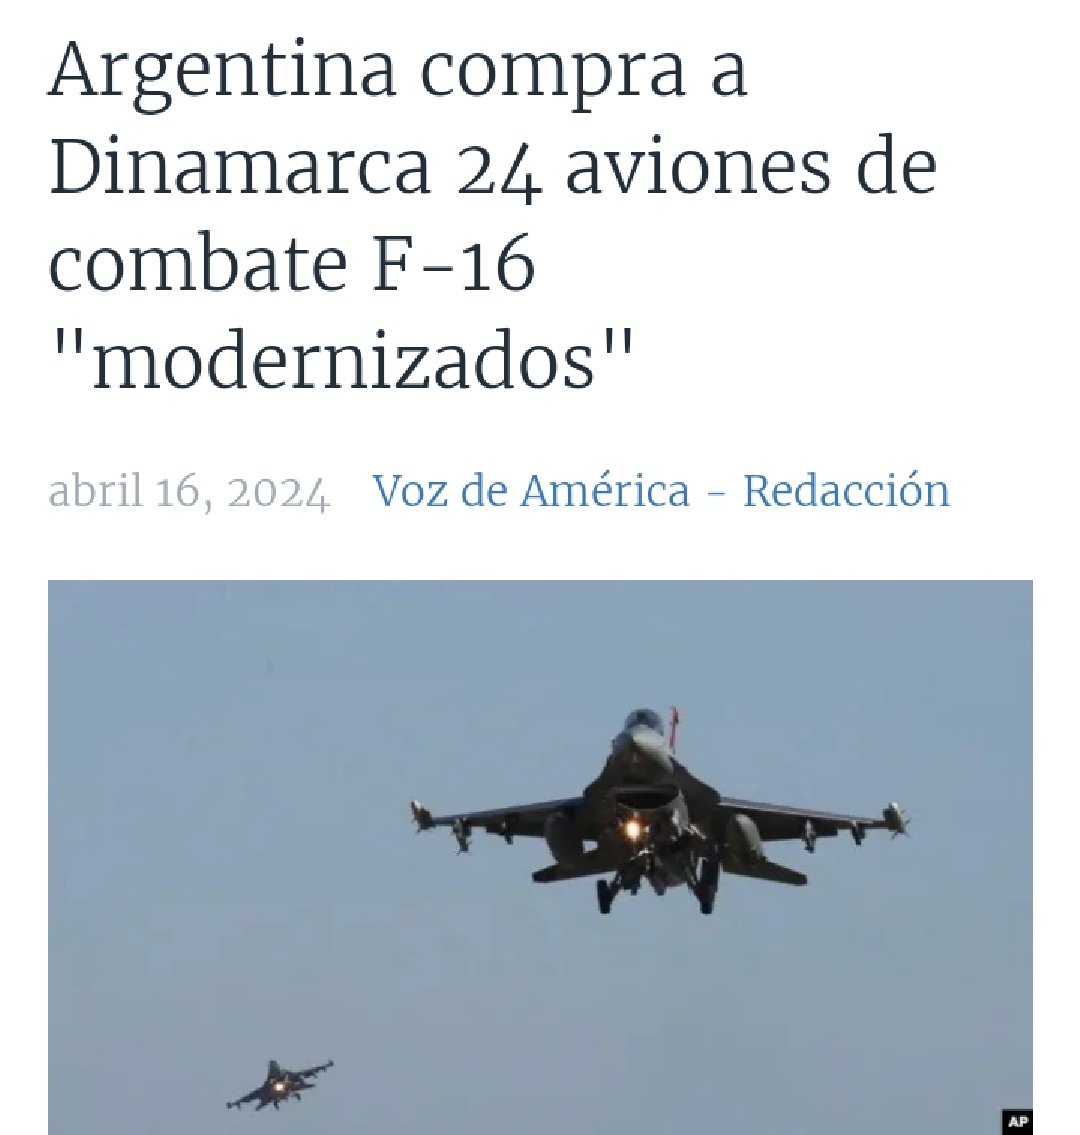 Mientras en la #Argentina de #MileiEsUnaEstafa han surgido más de 3 millones de nuevos pobres en unos meses, el pais pagará 300 millones de dólares a #Dinamarca por 24 aviones F-16 modernizados que tienen 40 años de construidos. ¡Viva la libertad carajo! 🤬🤬🤬